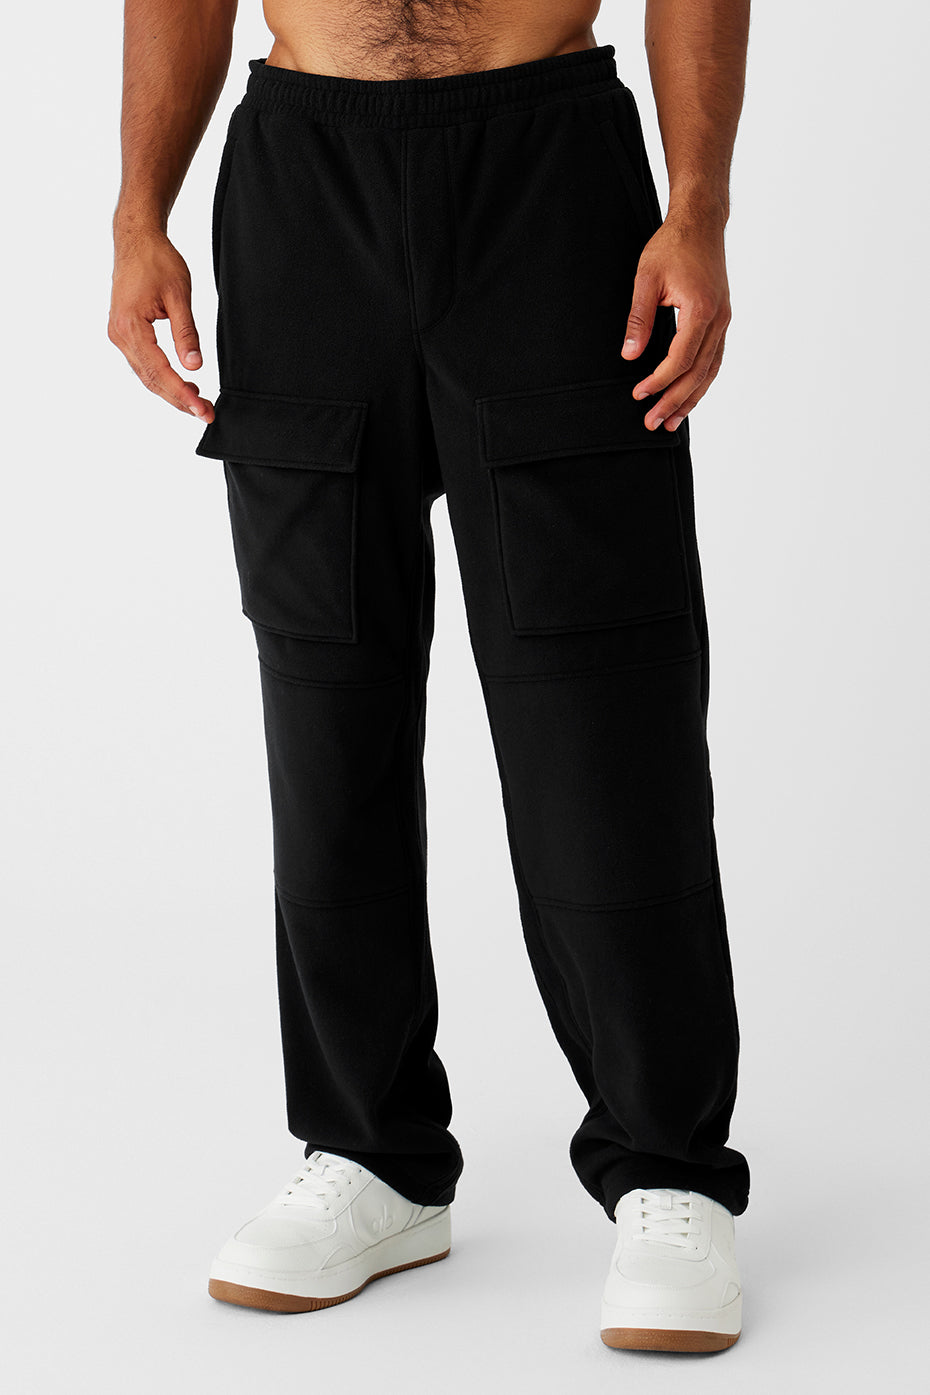 Polar Fleece Ridge Cargo Pants - Black - Black / S